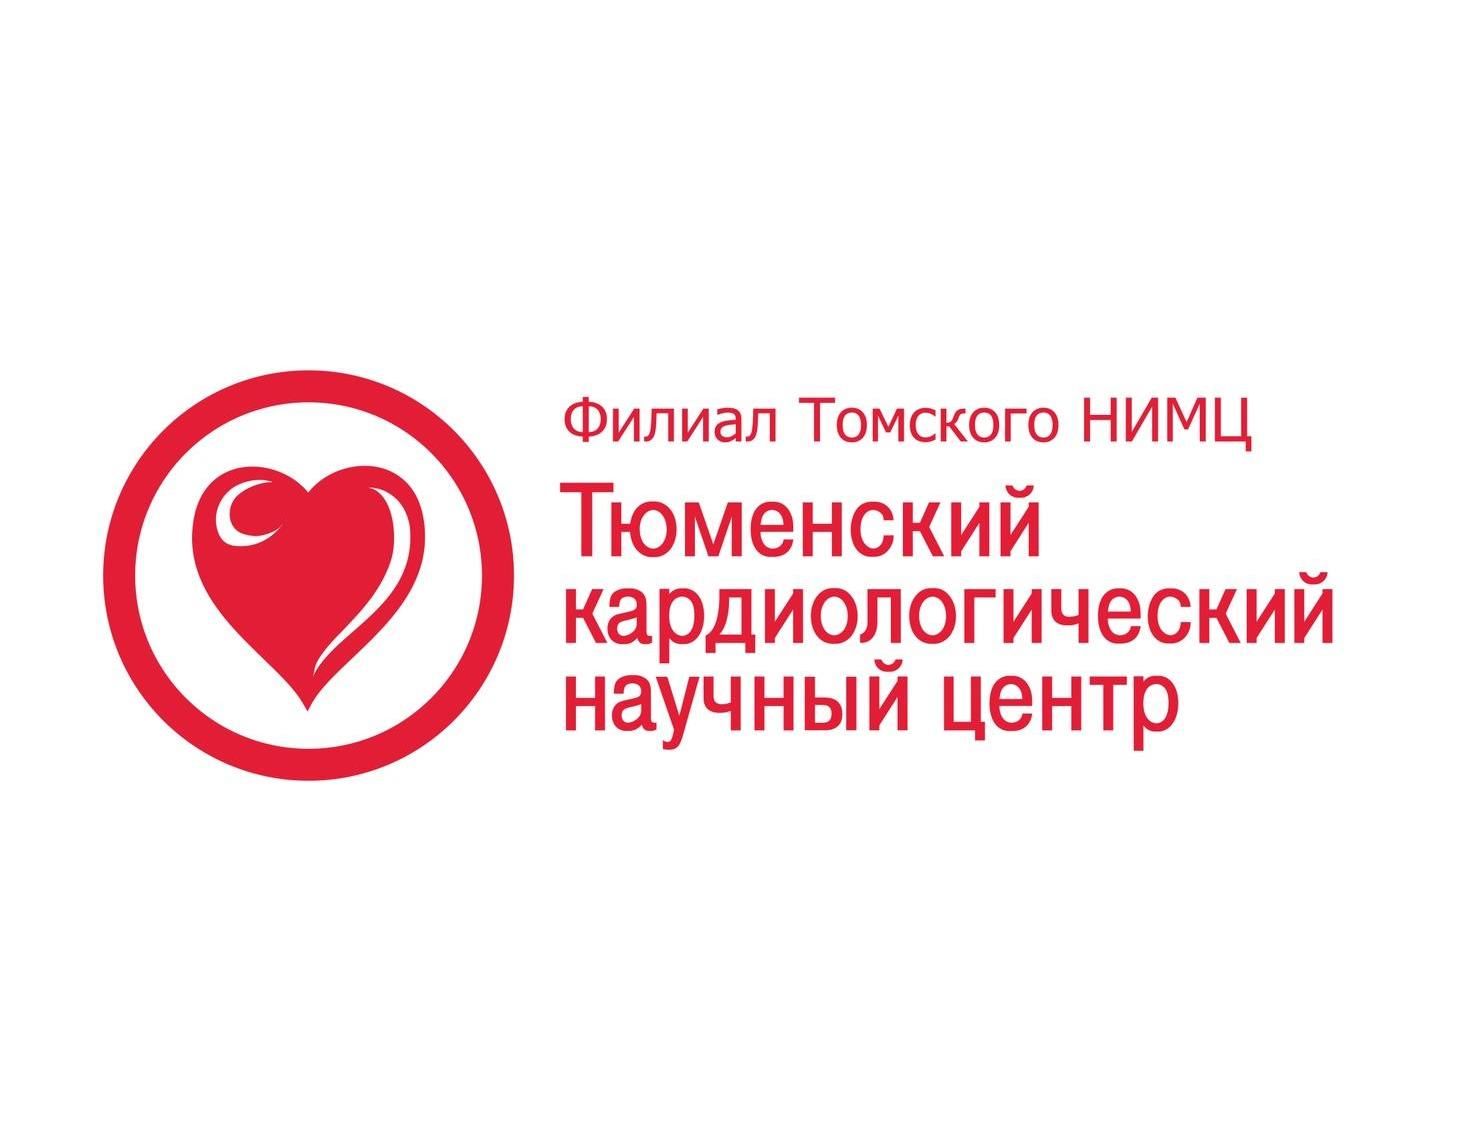 Международная научно-практическая конференция «Высокие технологии в диагностике и лечении сердечно-сосудистых заболеваний»